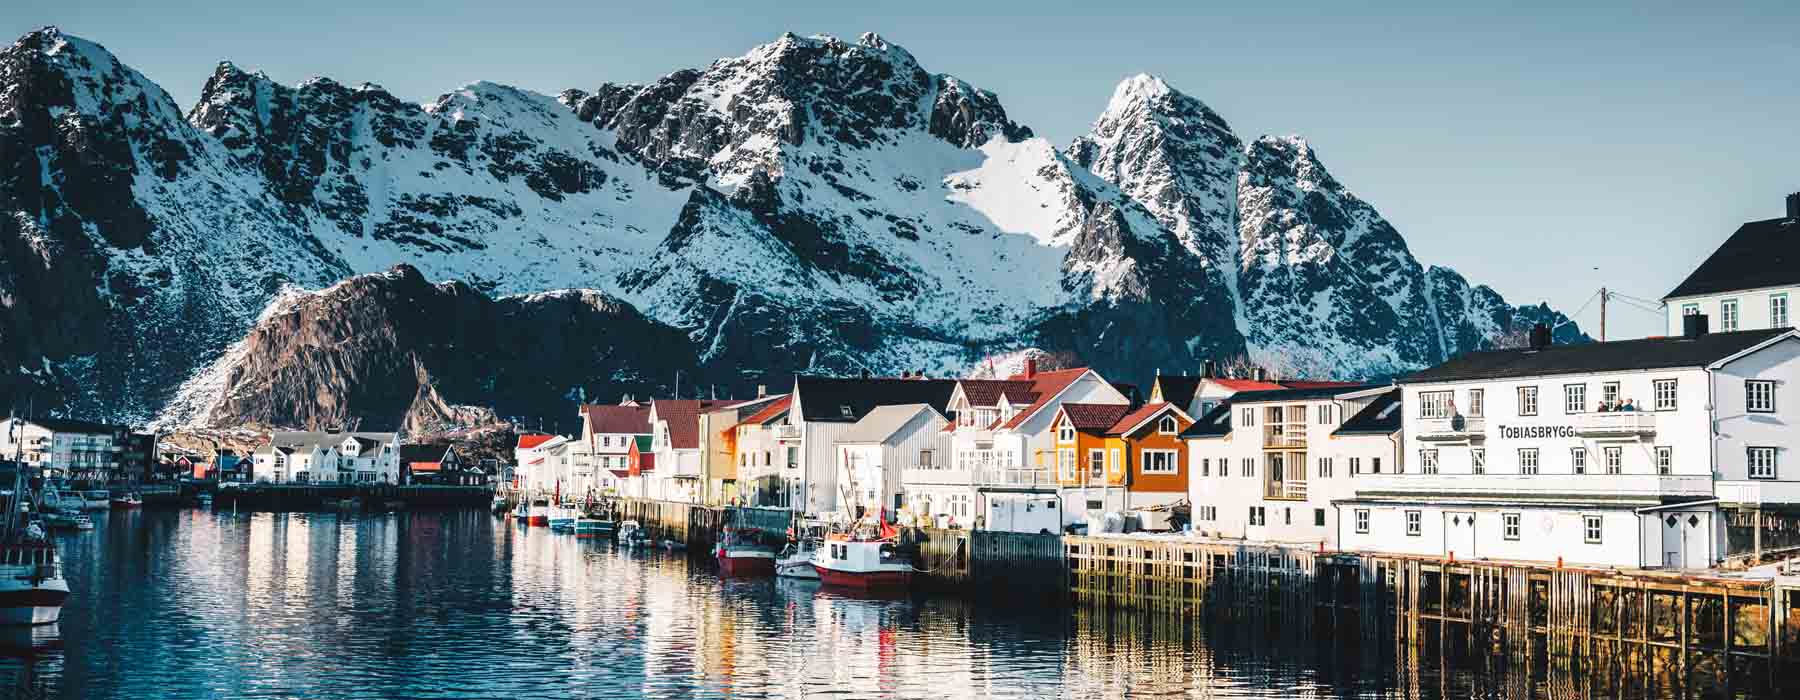 All our Norway<br class="hidden-md hidden-lg" /> Travel Bucket List